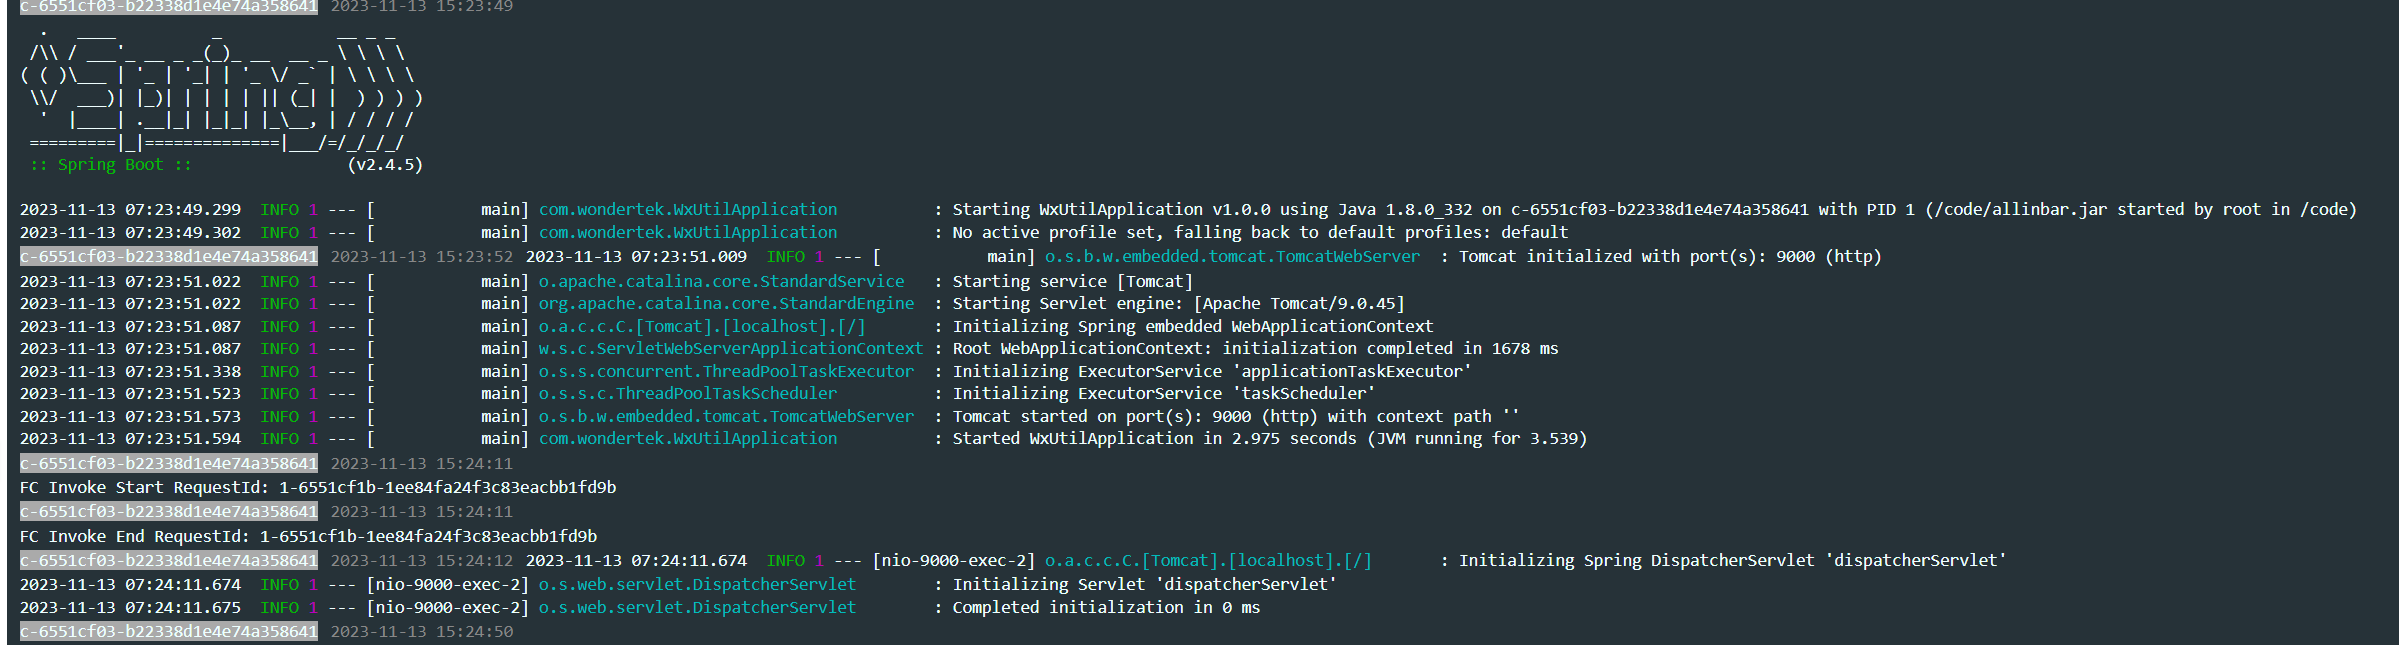 Serverless 应用引擎产品使用之阿里函数计算中要关掉http触发器的jwt认证才可以进行性能探测如何解决